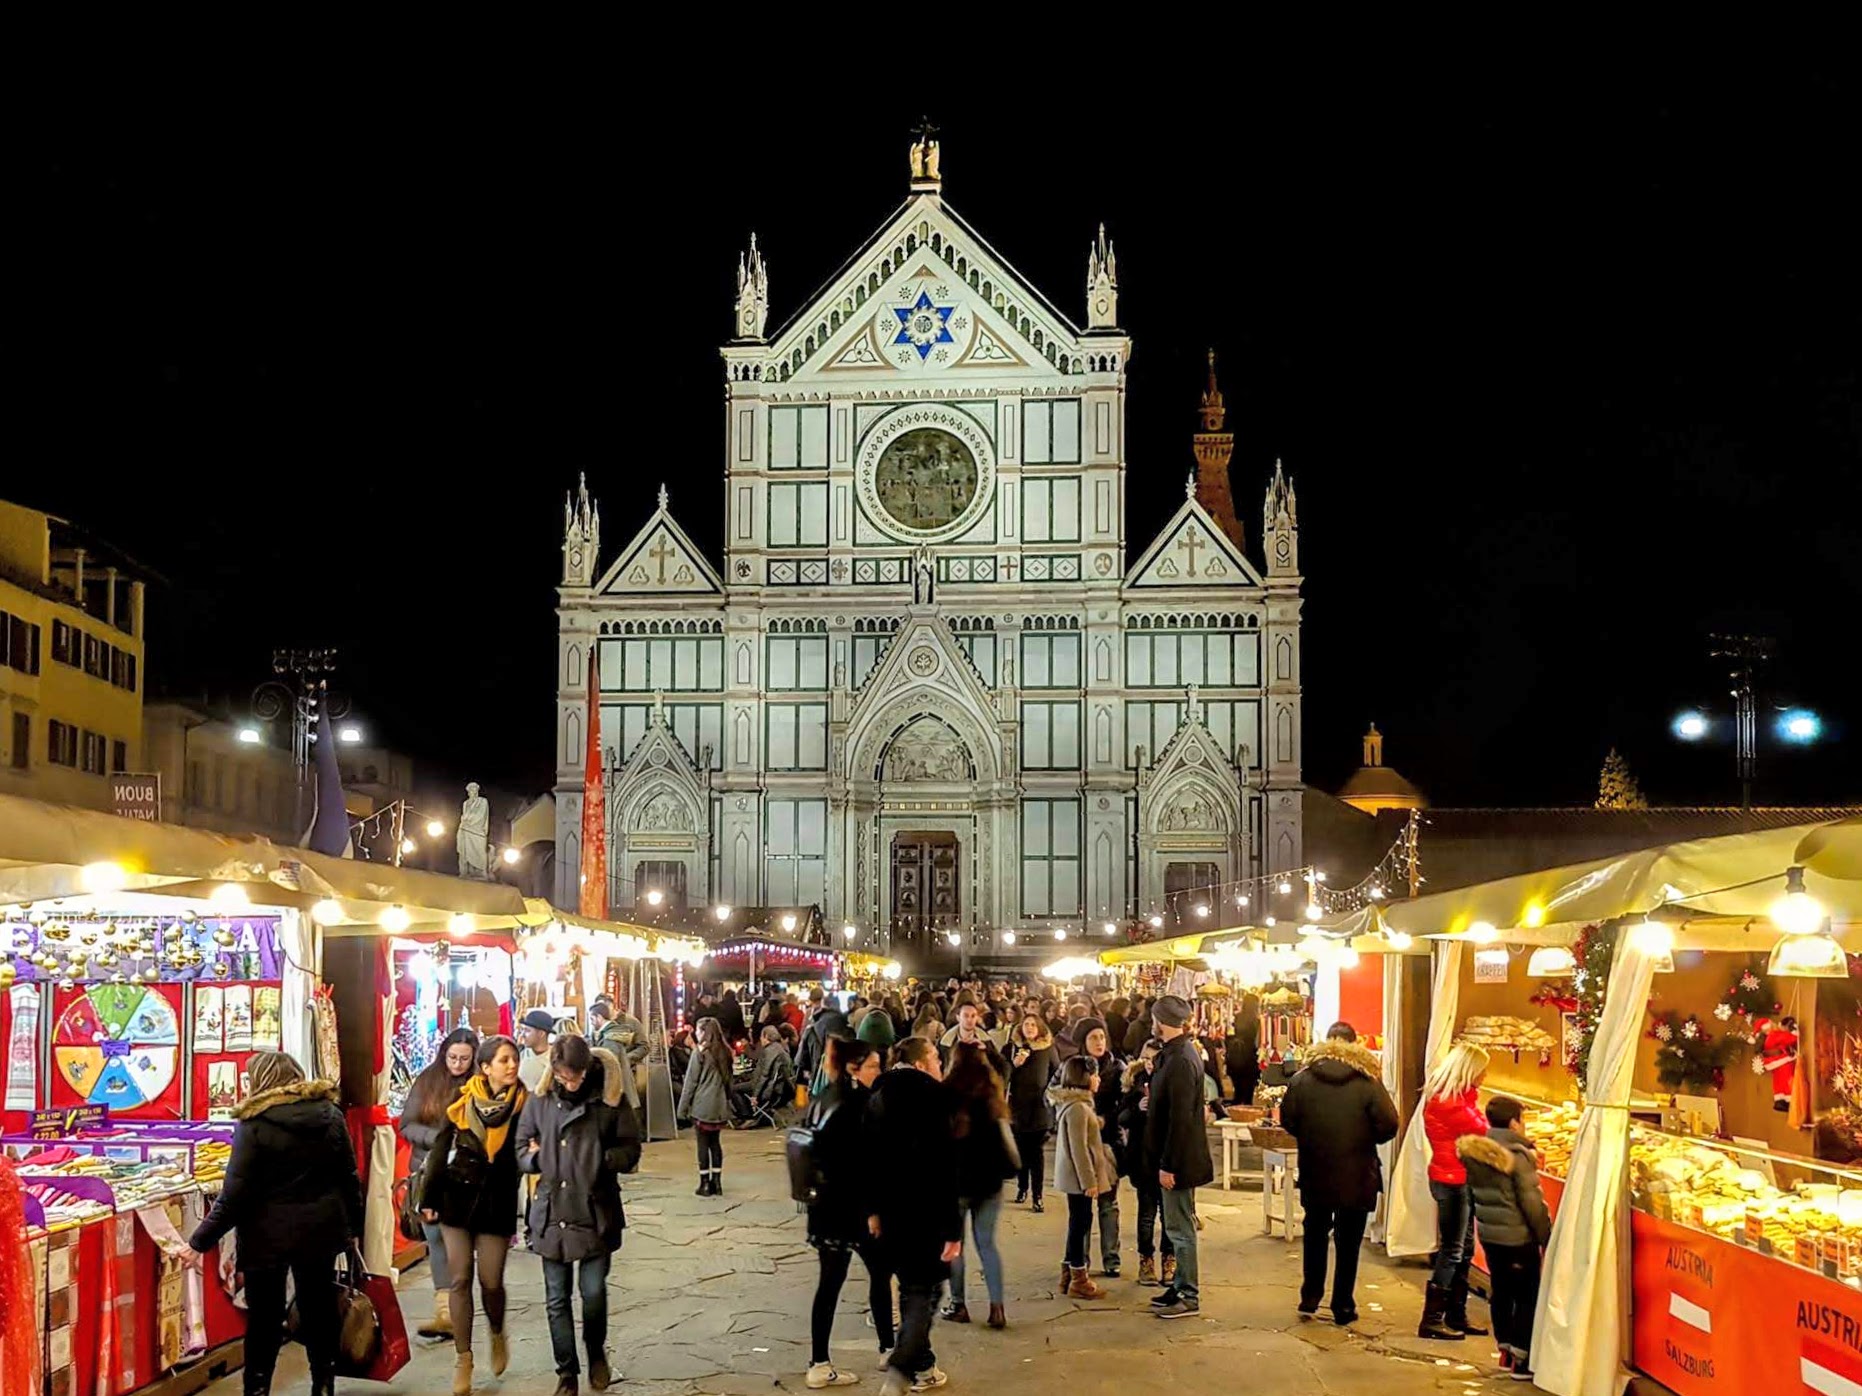 Marché de Noël sur la Piazza Santa Croce, Florence